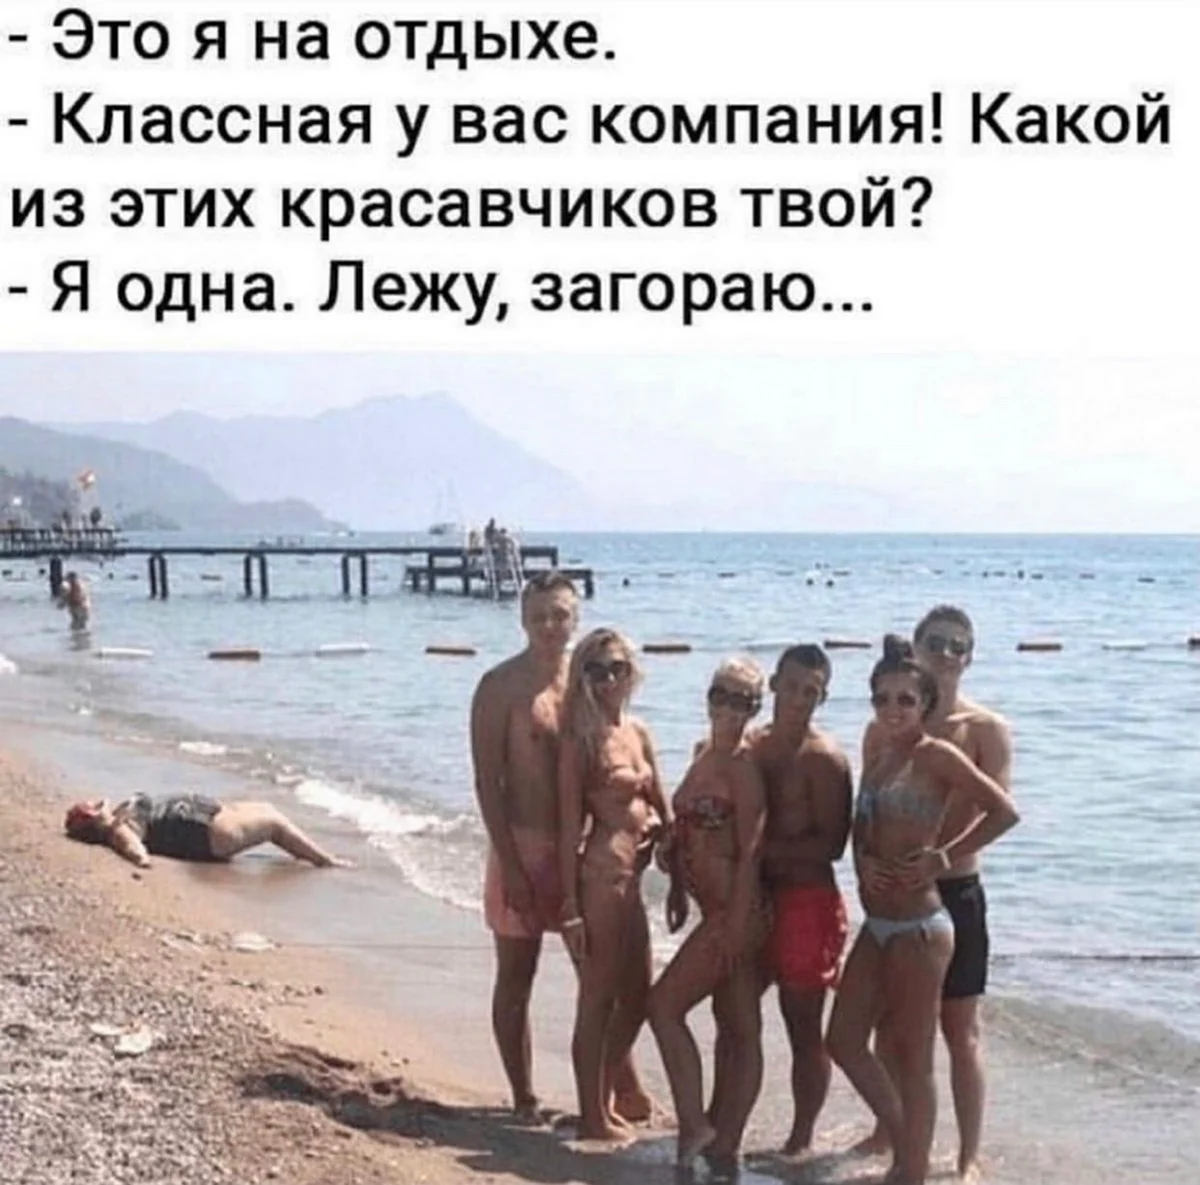 Мужчины на нудистком пляже. Картинка